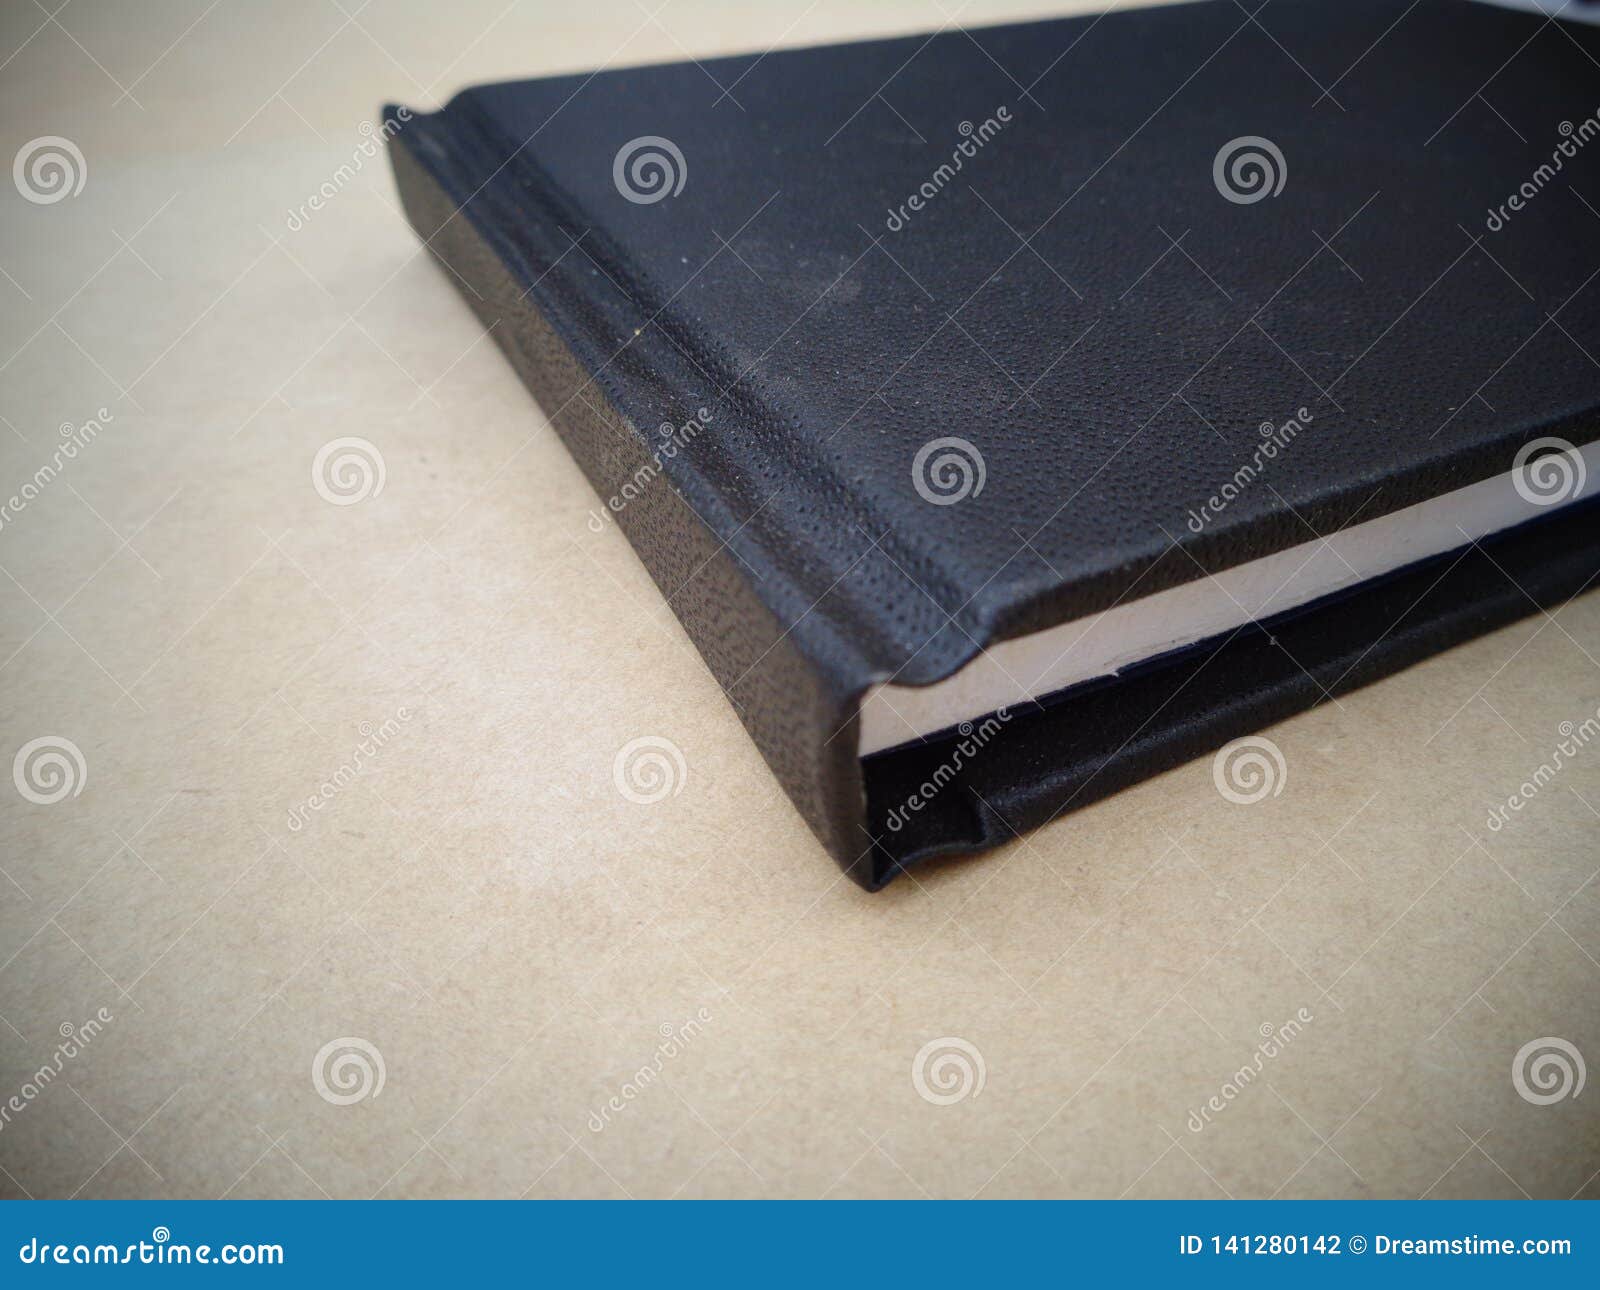 bookbinding notebook